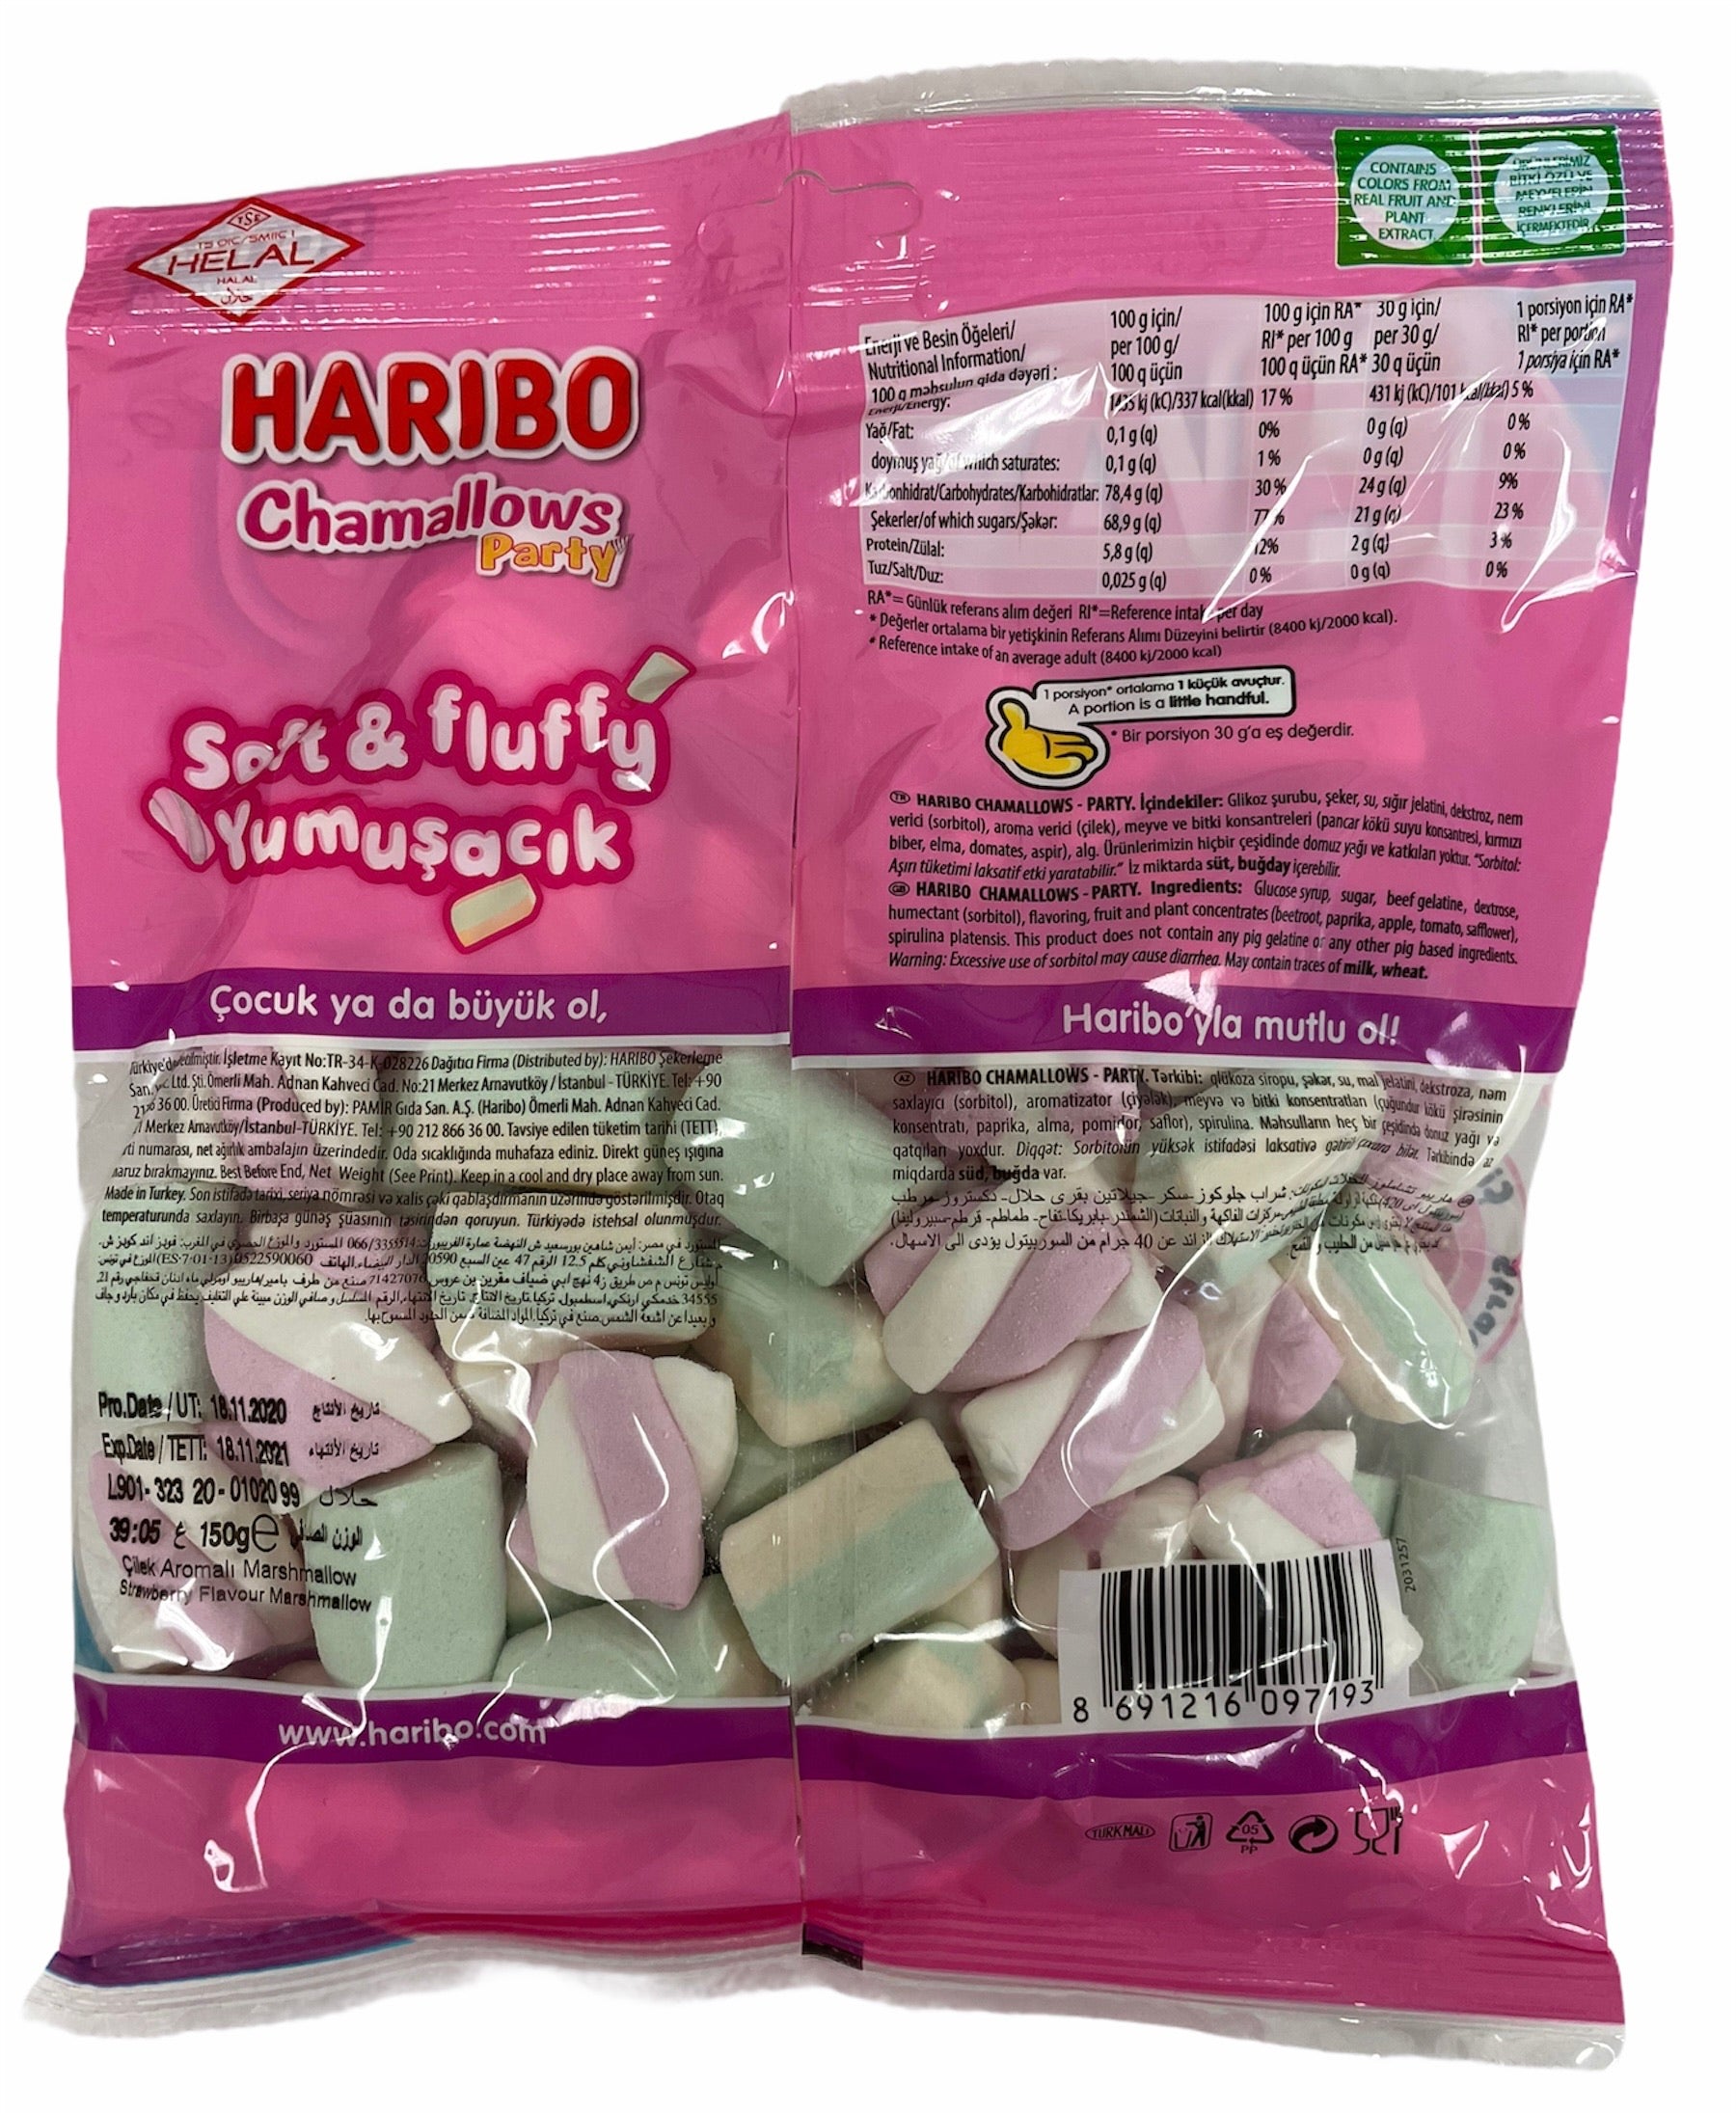 Halal Haribo Chamallows Marshmallows – We Love Candy